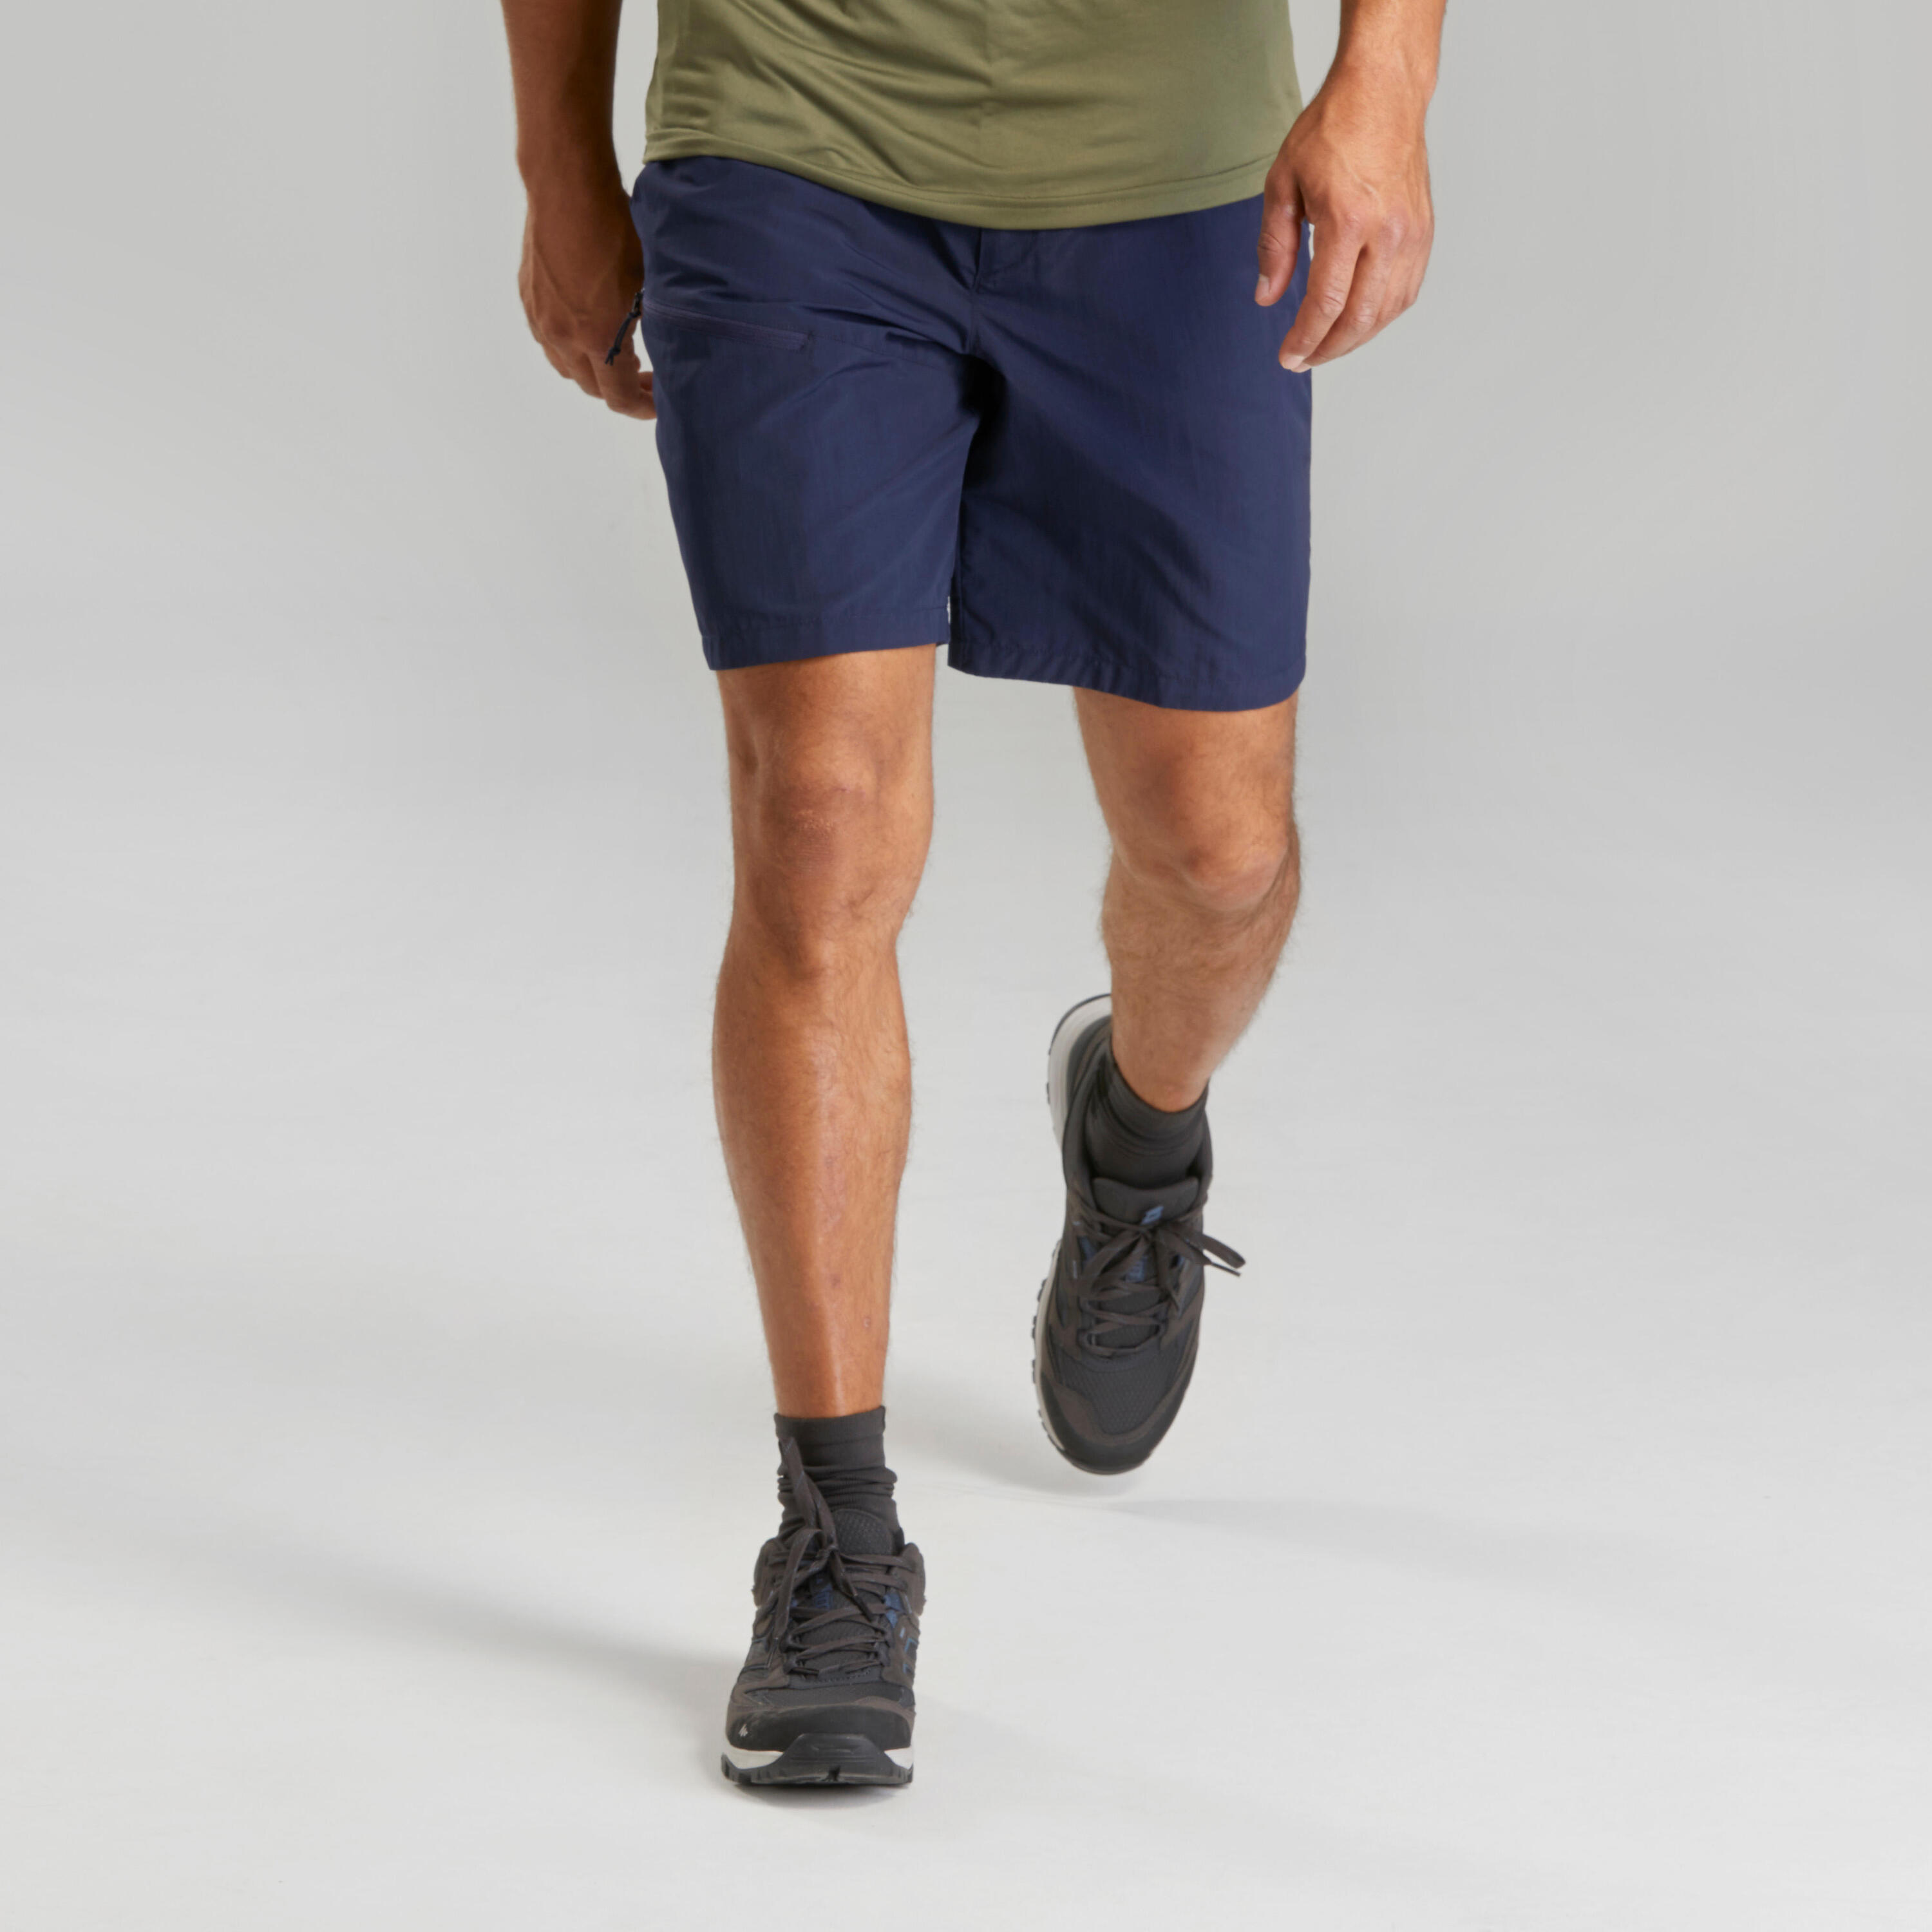 Men’s Hiking Shorts - MH100 5/6